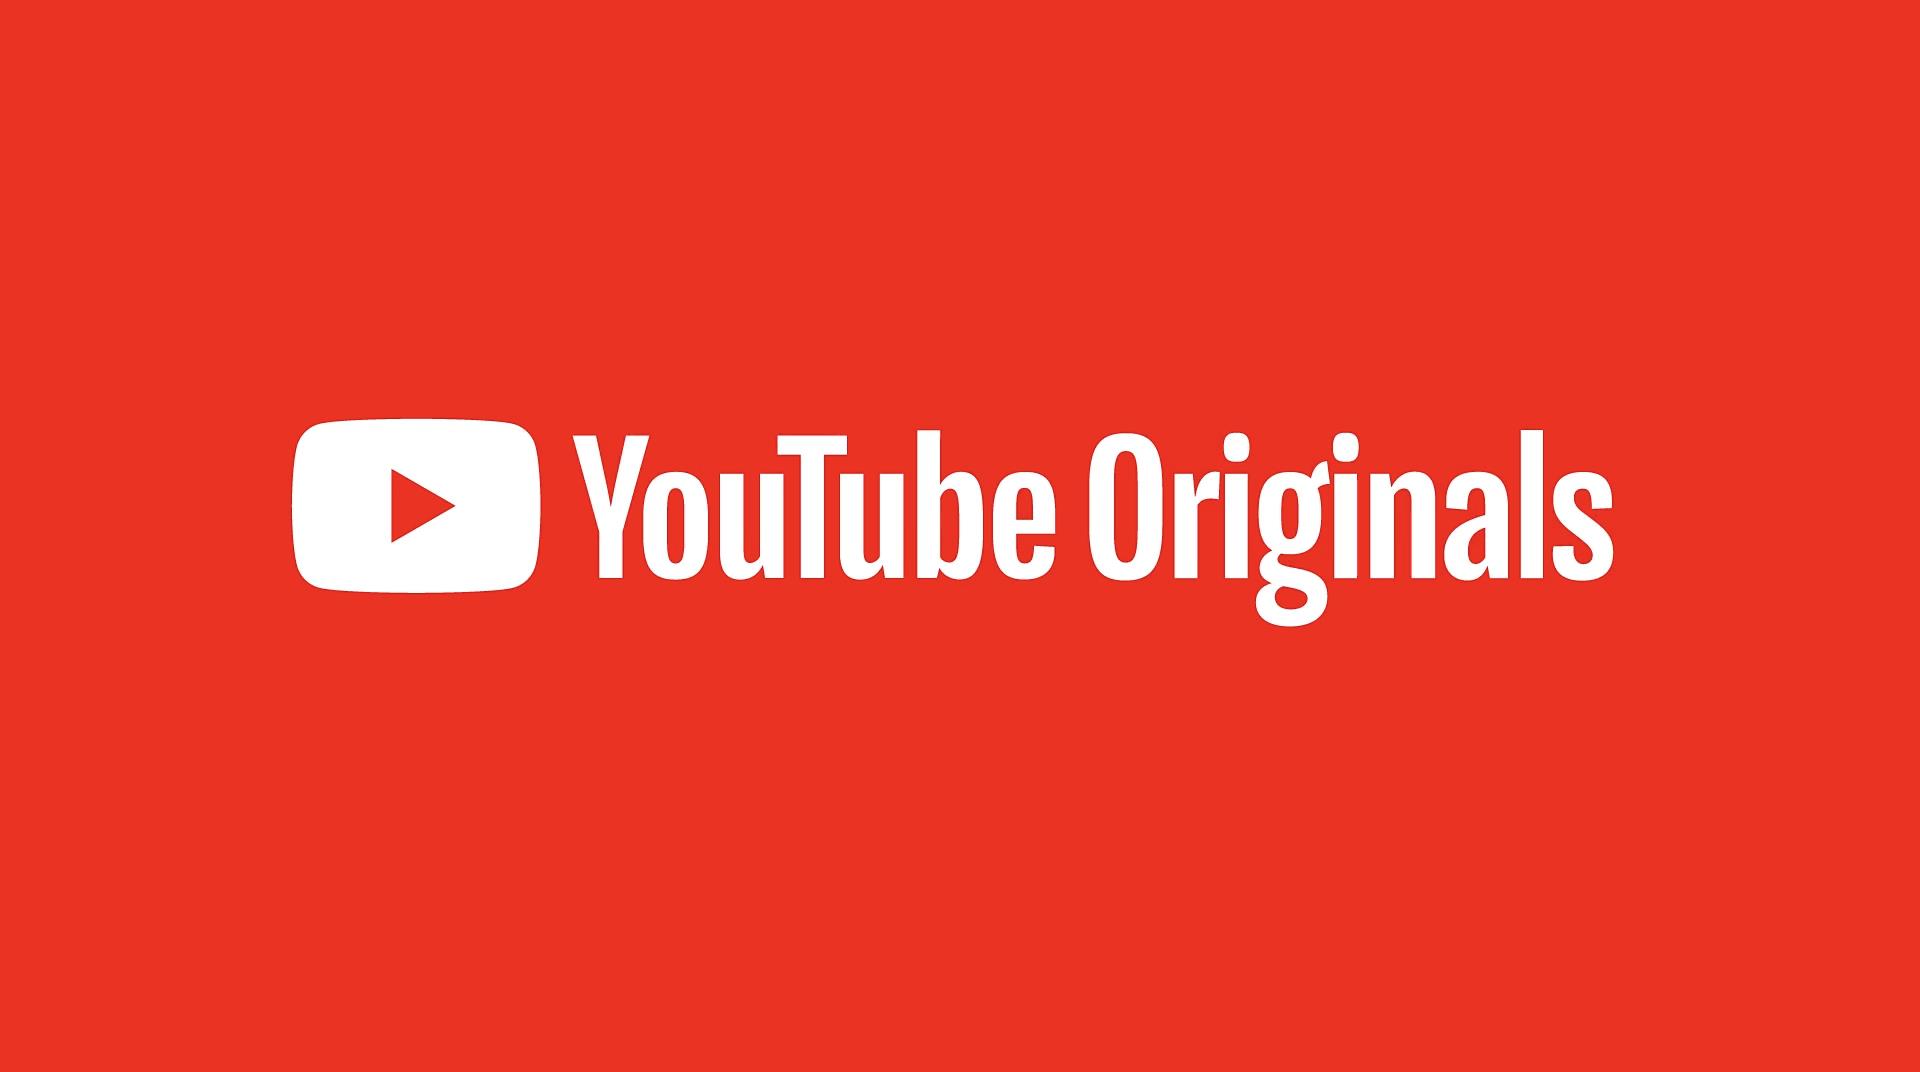 YouTube Originals içerikleri, 24 Eylül’den itibaren tüm kullanıcılar için ücretsiz oluyor